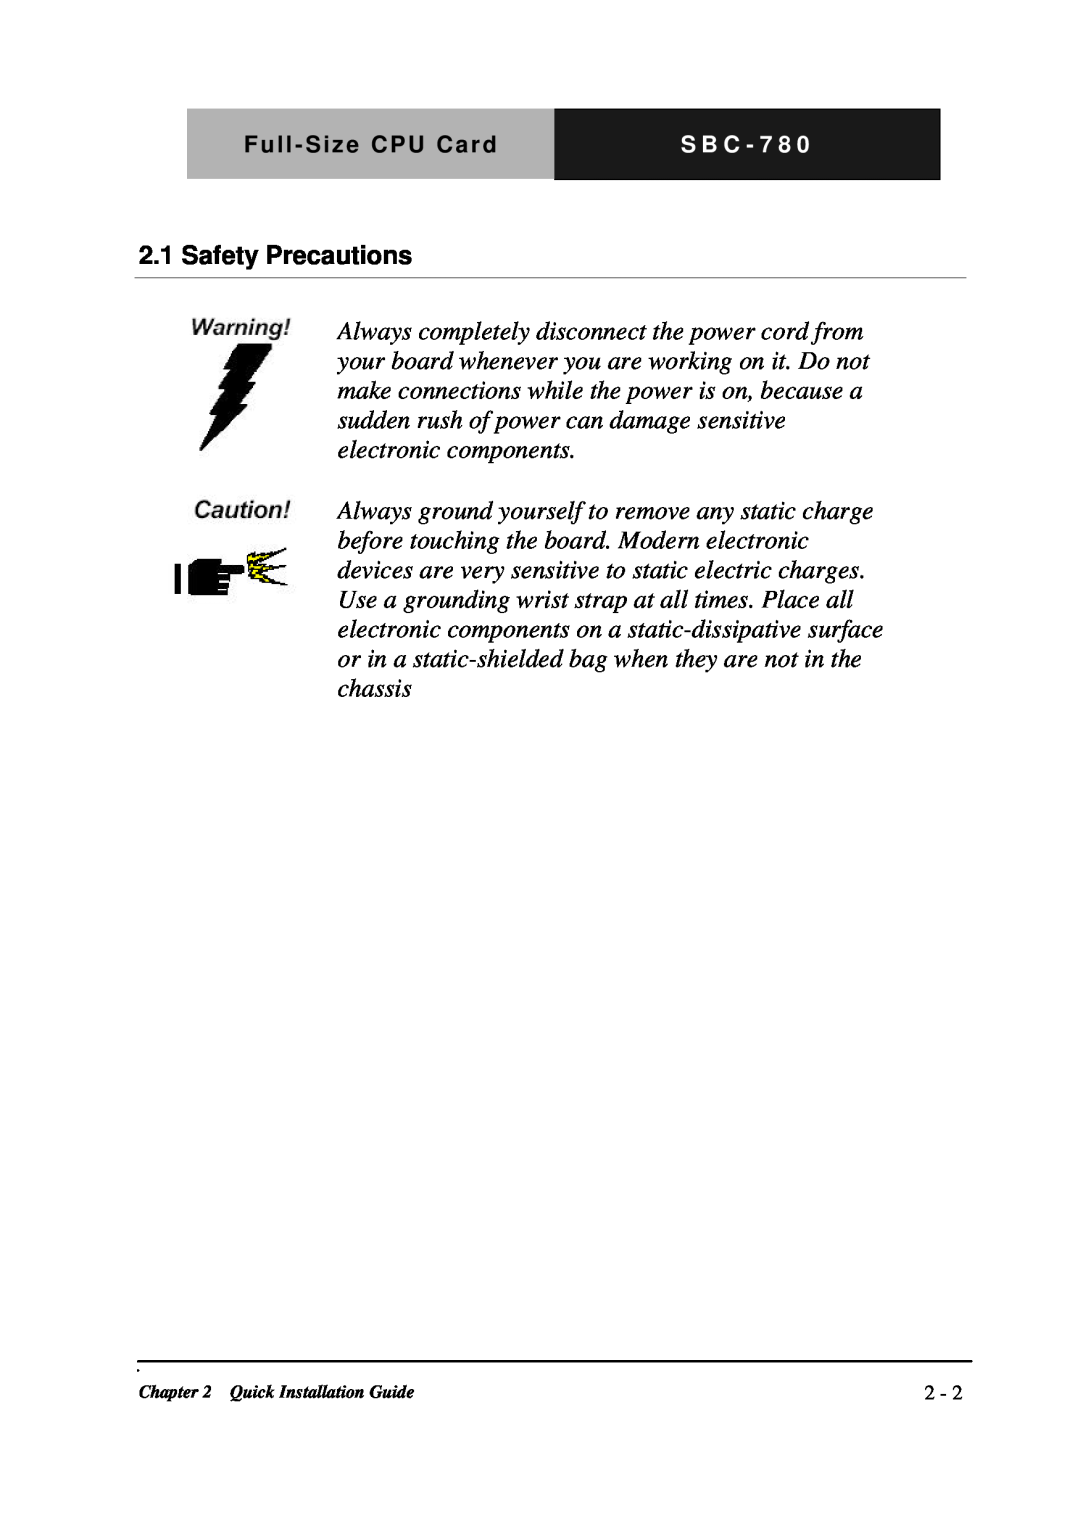 Intel SBC-780 manual Safety Precautions 